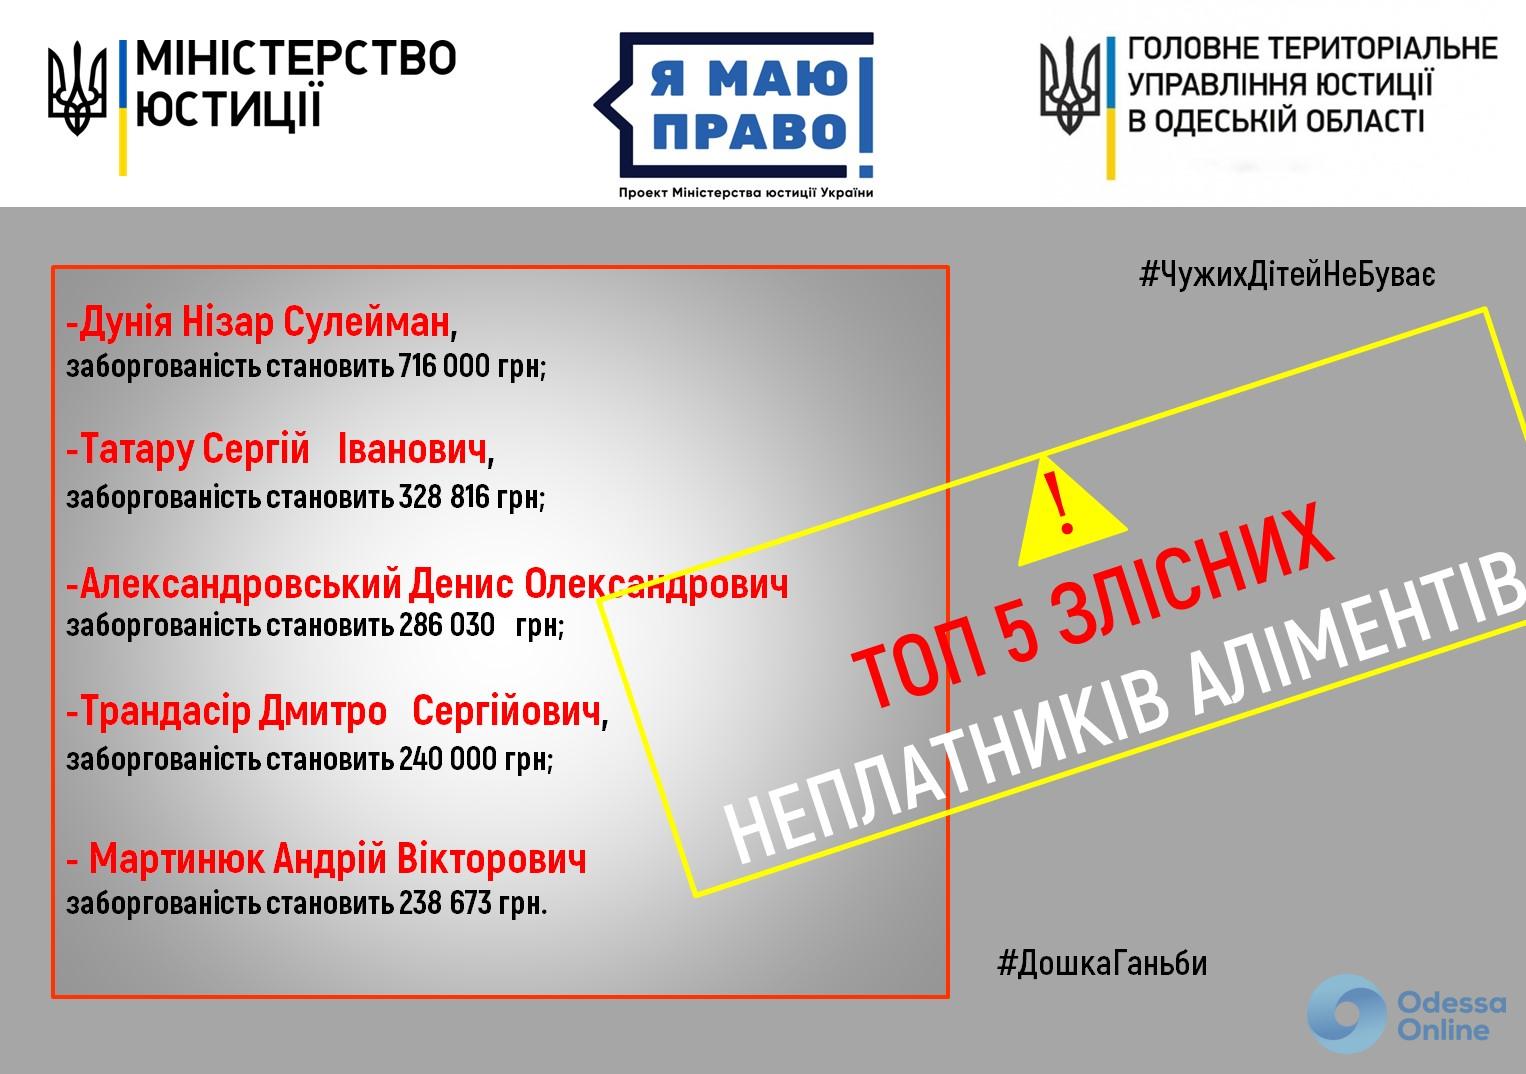 Одесское управление юстиции опубликовало топ-5 должников по алиментам